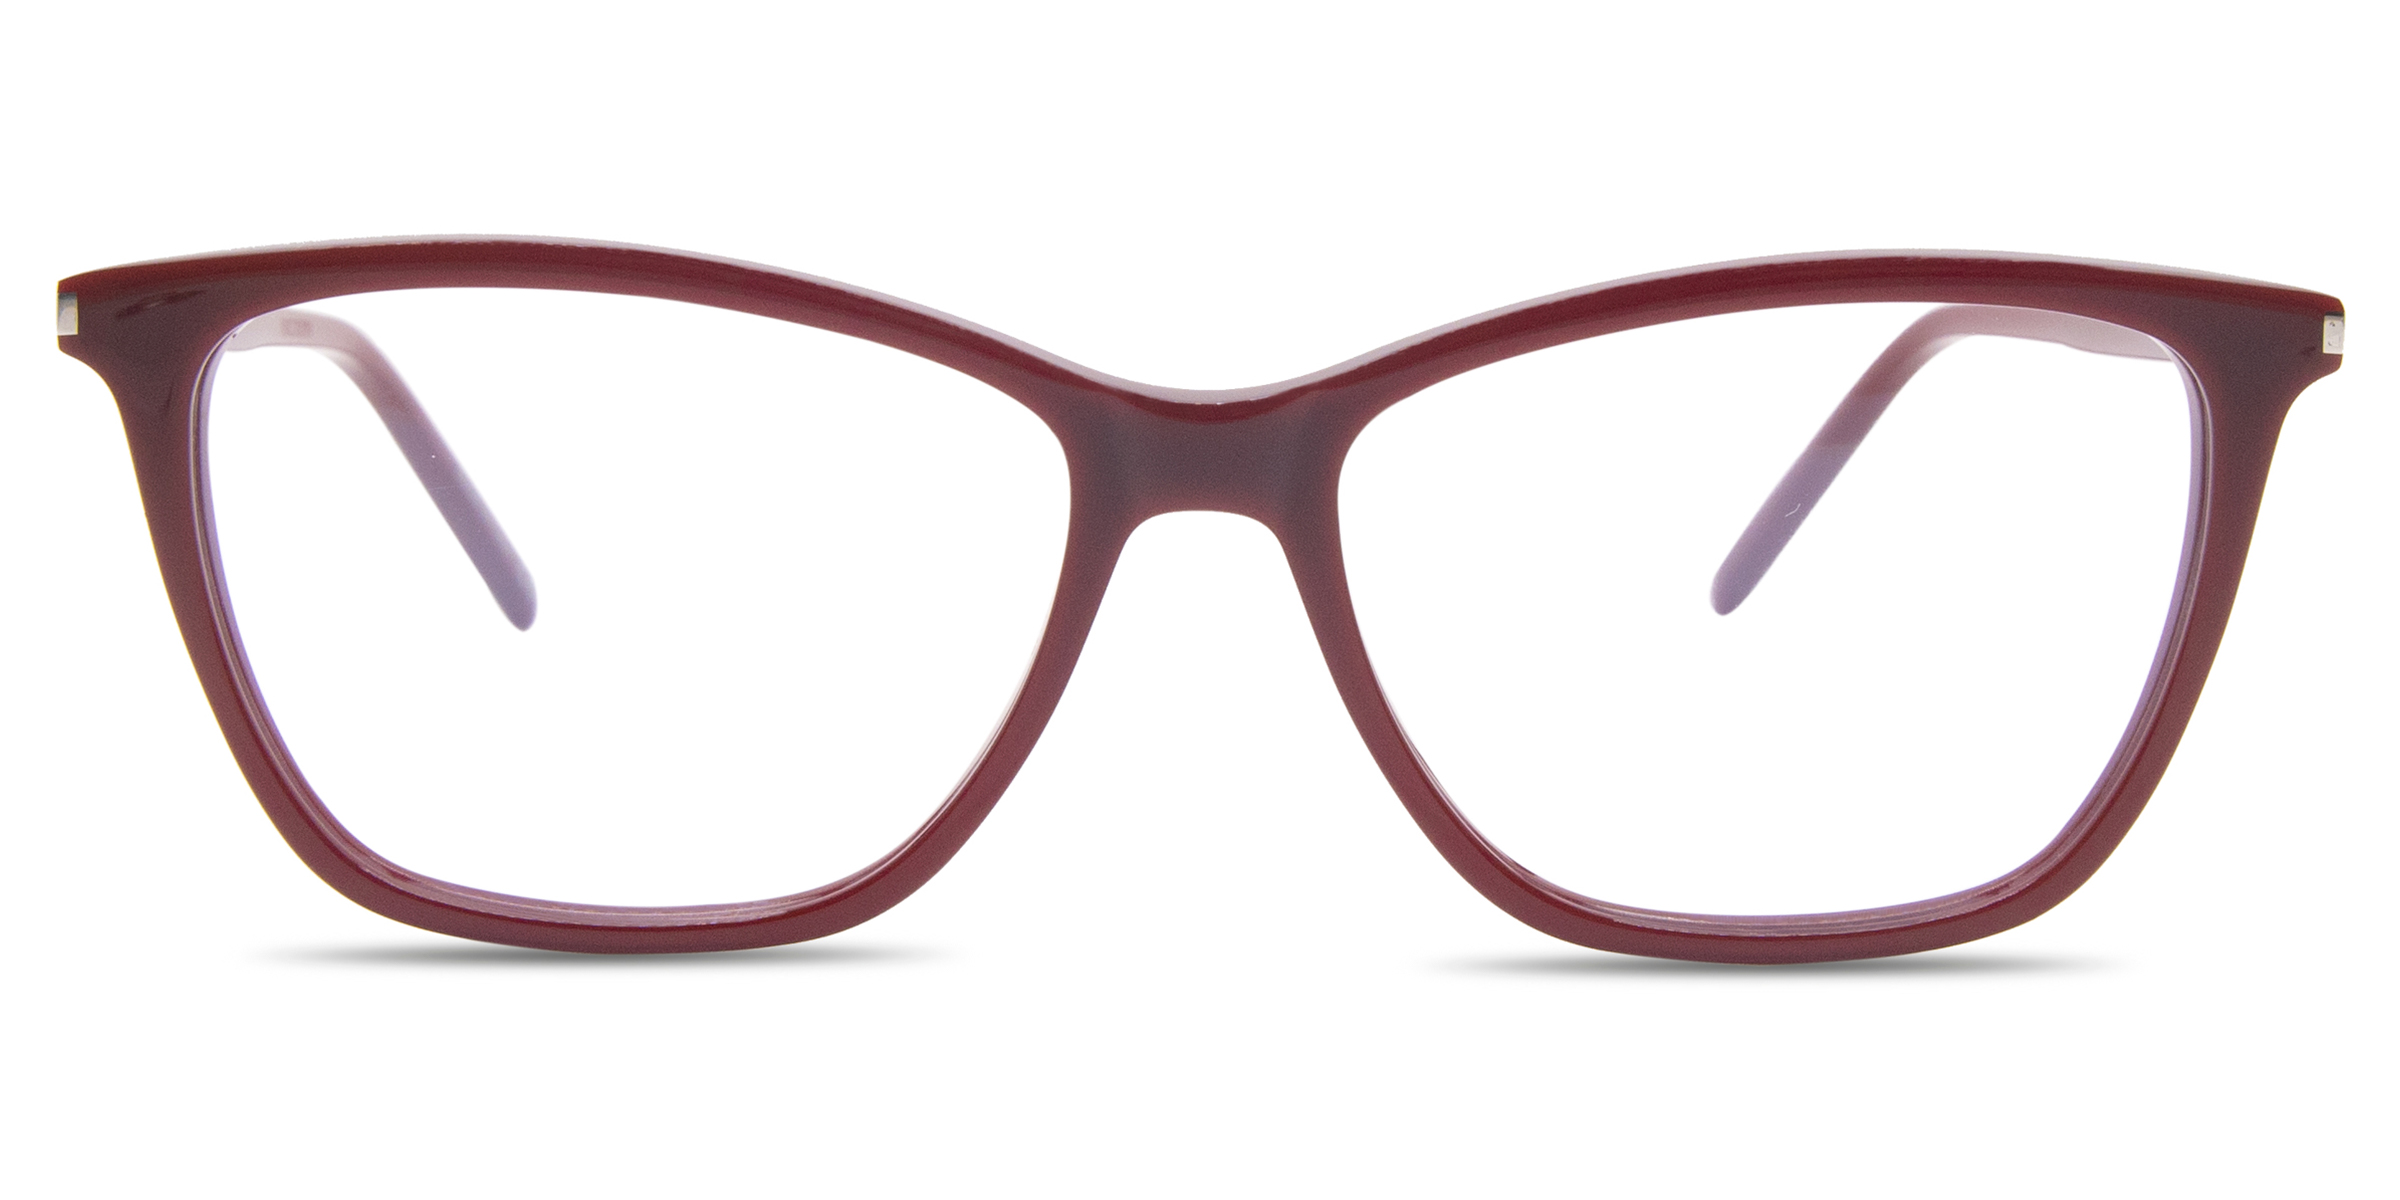 Buy Saint Laurent SL 259 eyeglasses for women at For Eyes